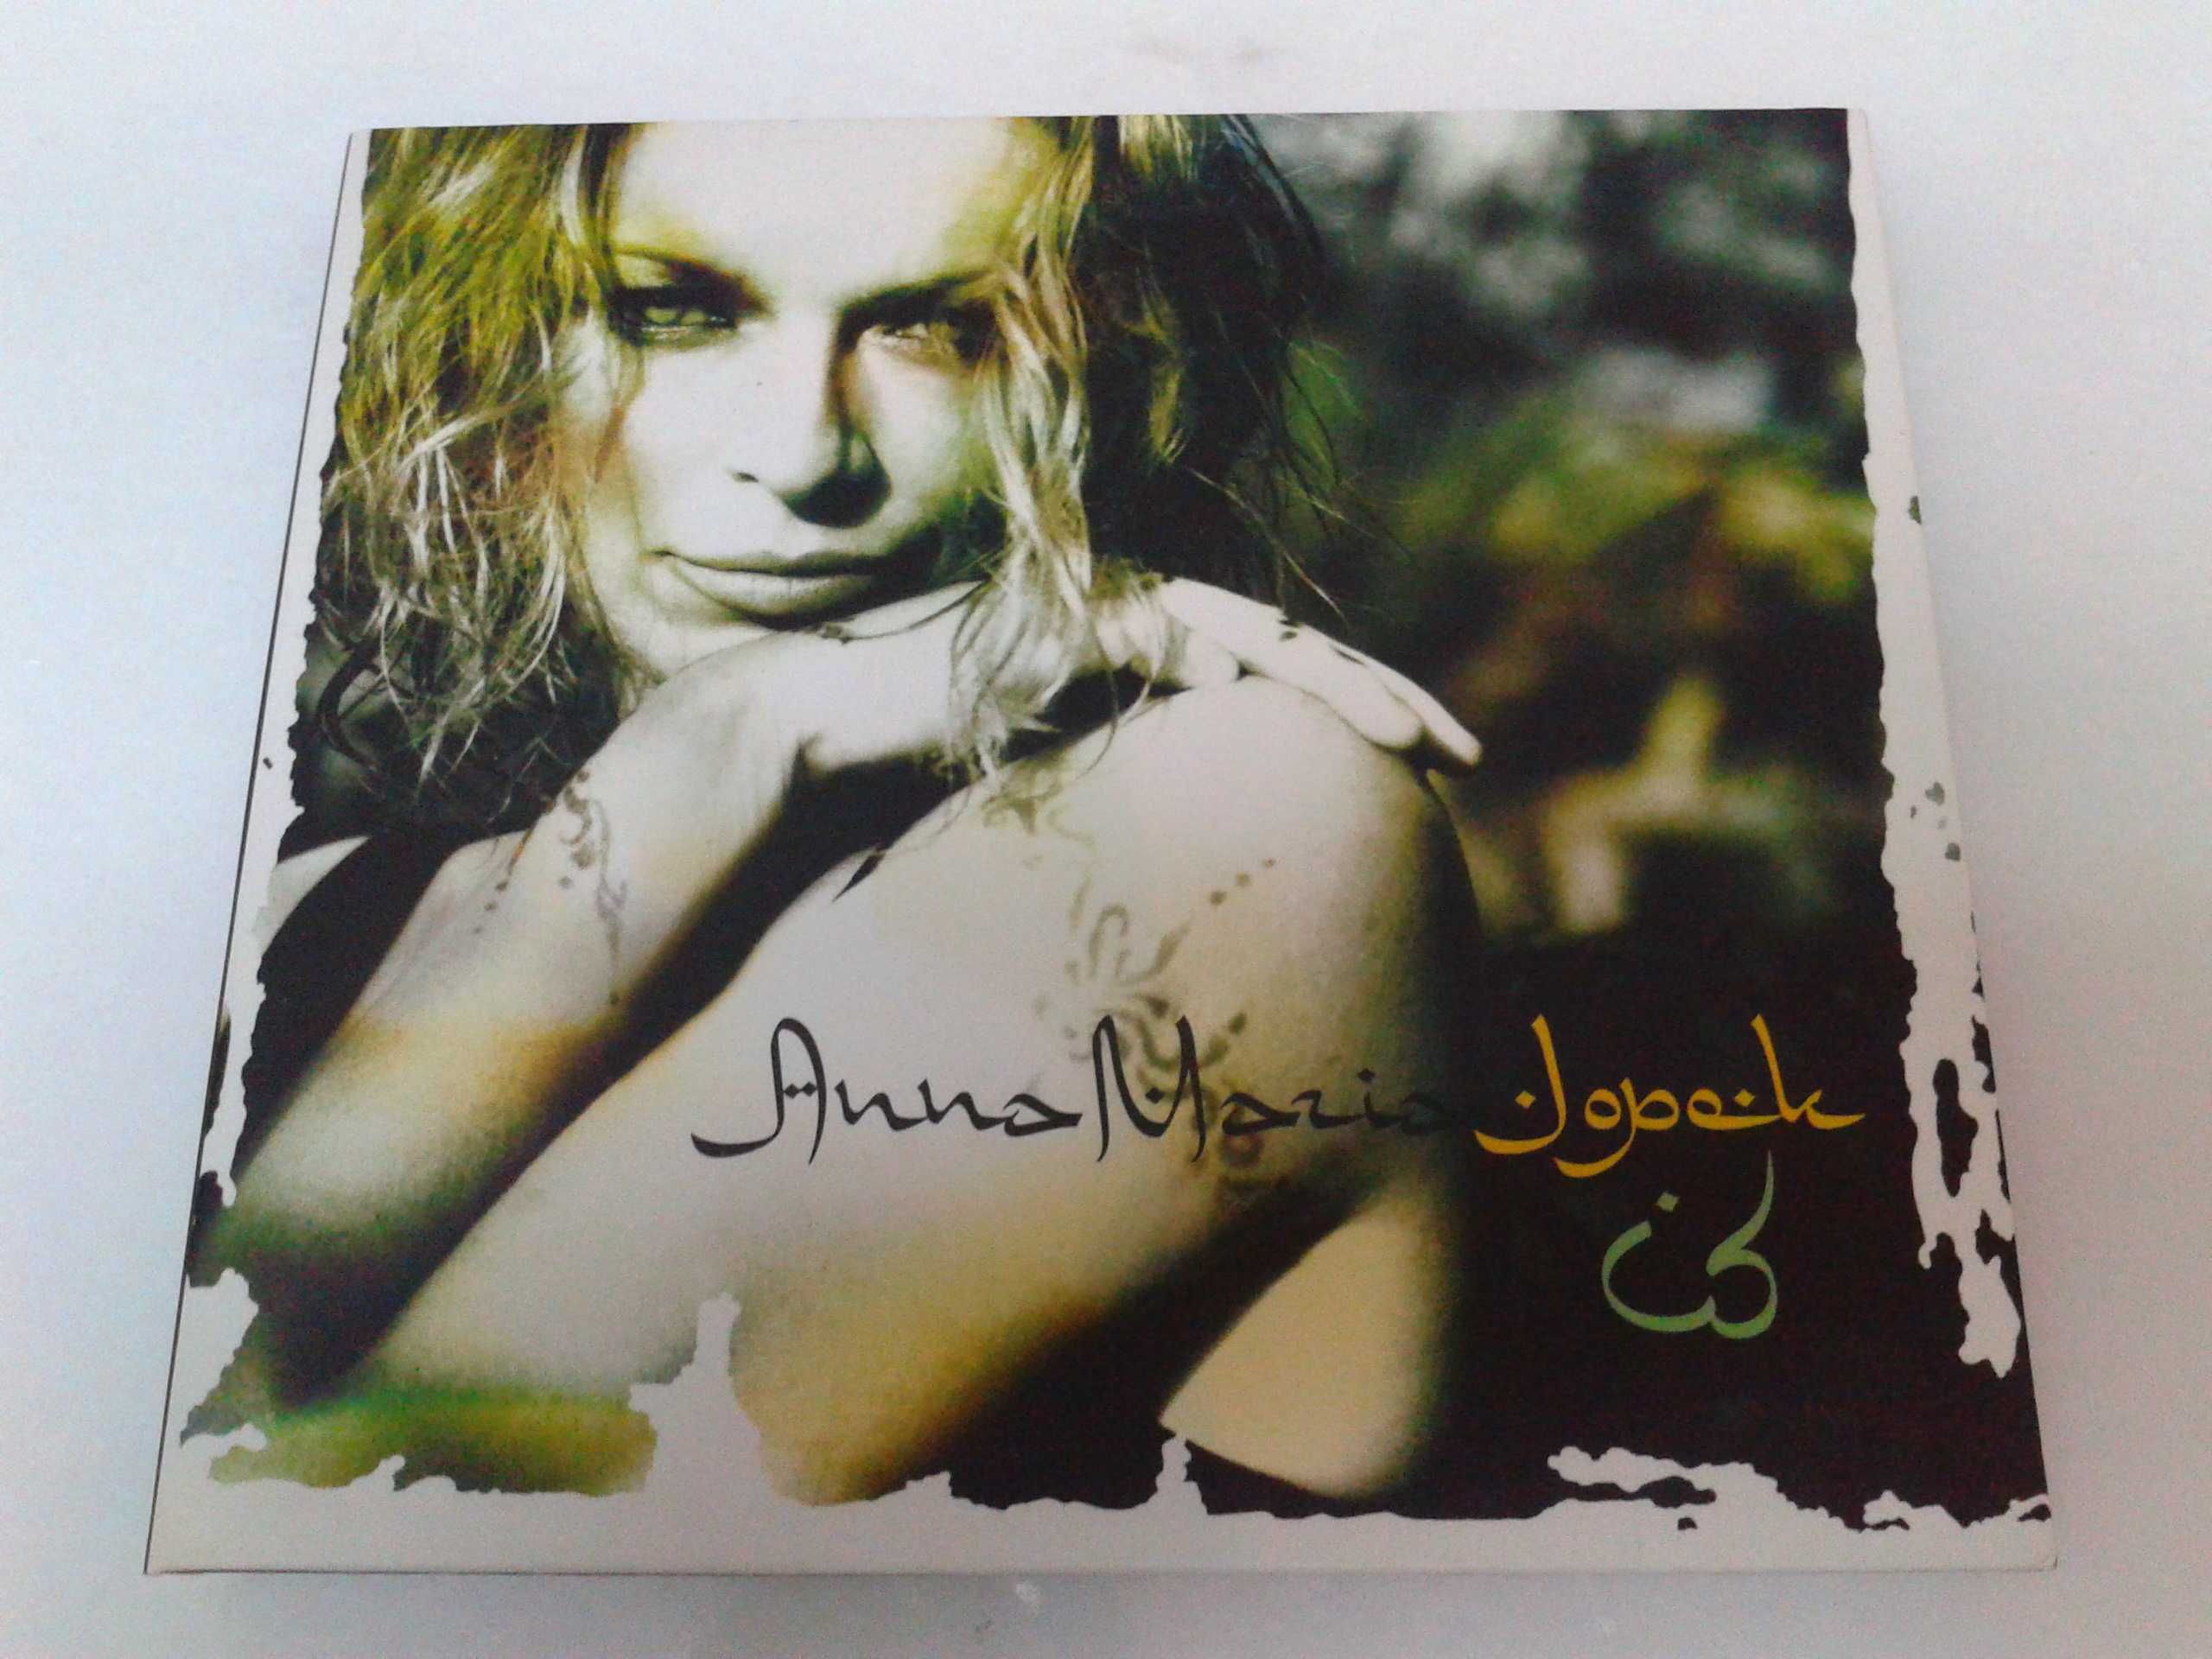 Anna Maria Jopek - ID  CD